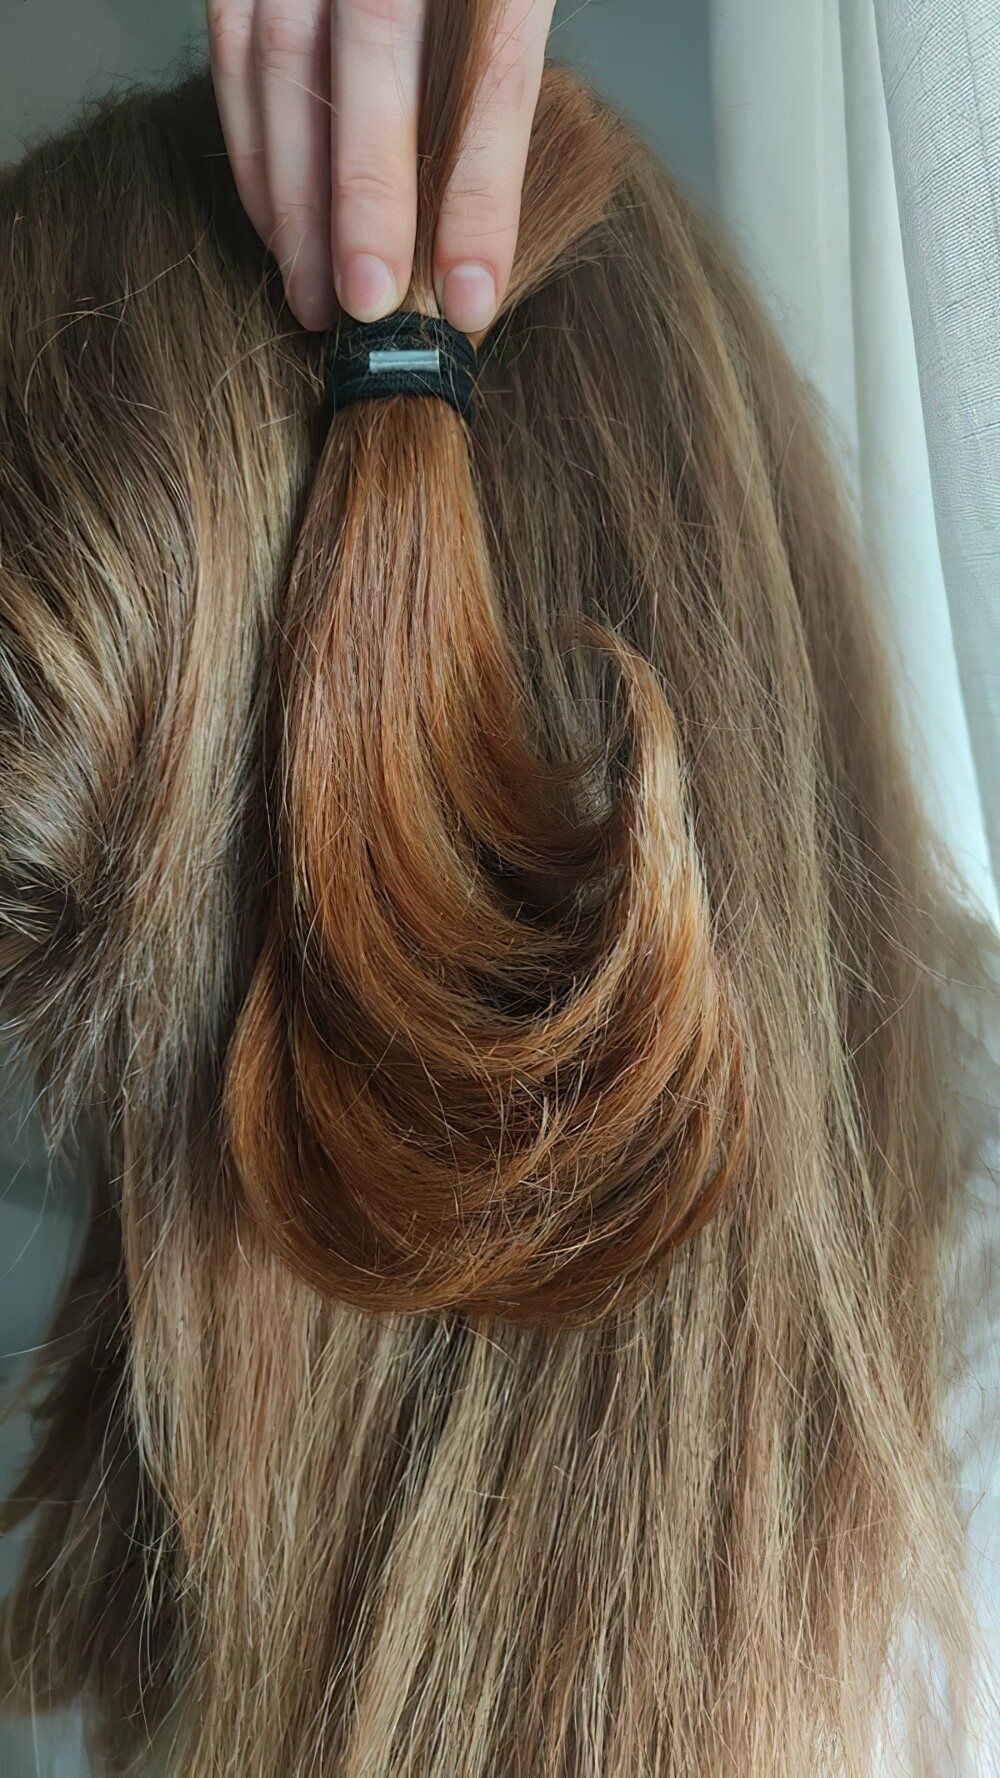 4. Рыжие волосы этой женщины потускнели за последние 11 лет, о чем свидетельствует более тёмная прядь волос, отрезанная в 16 лет